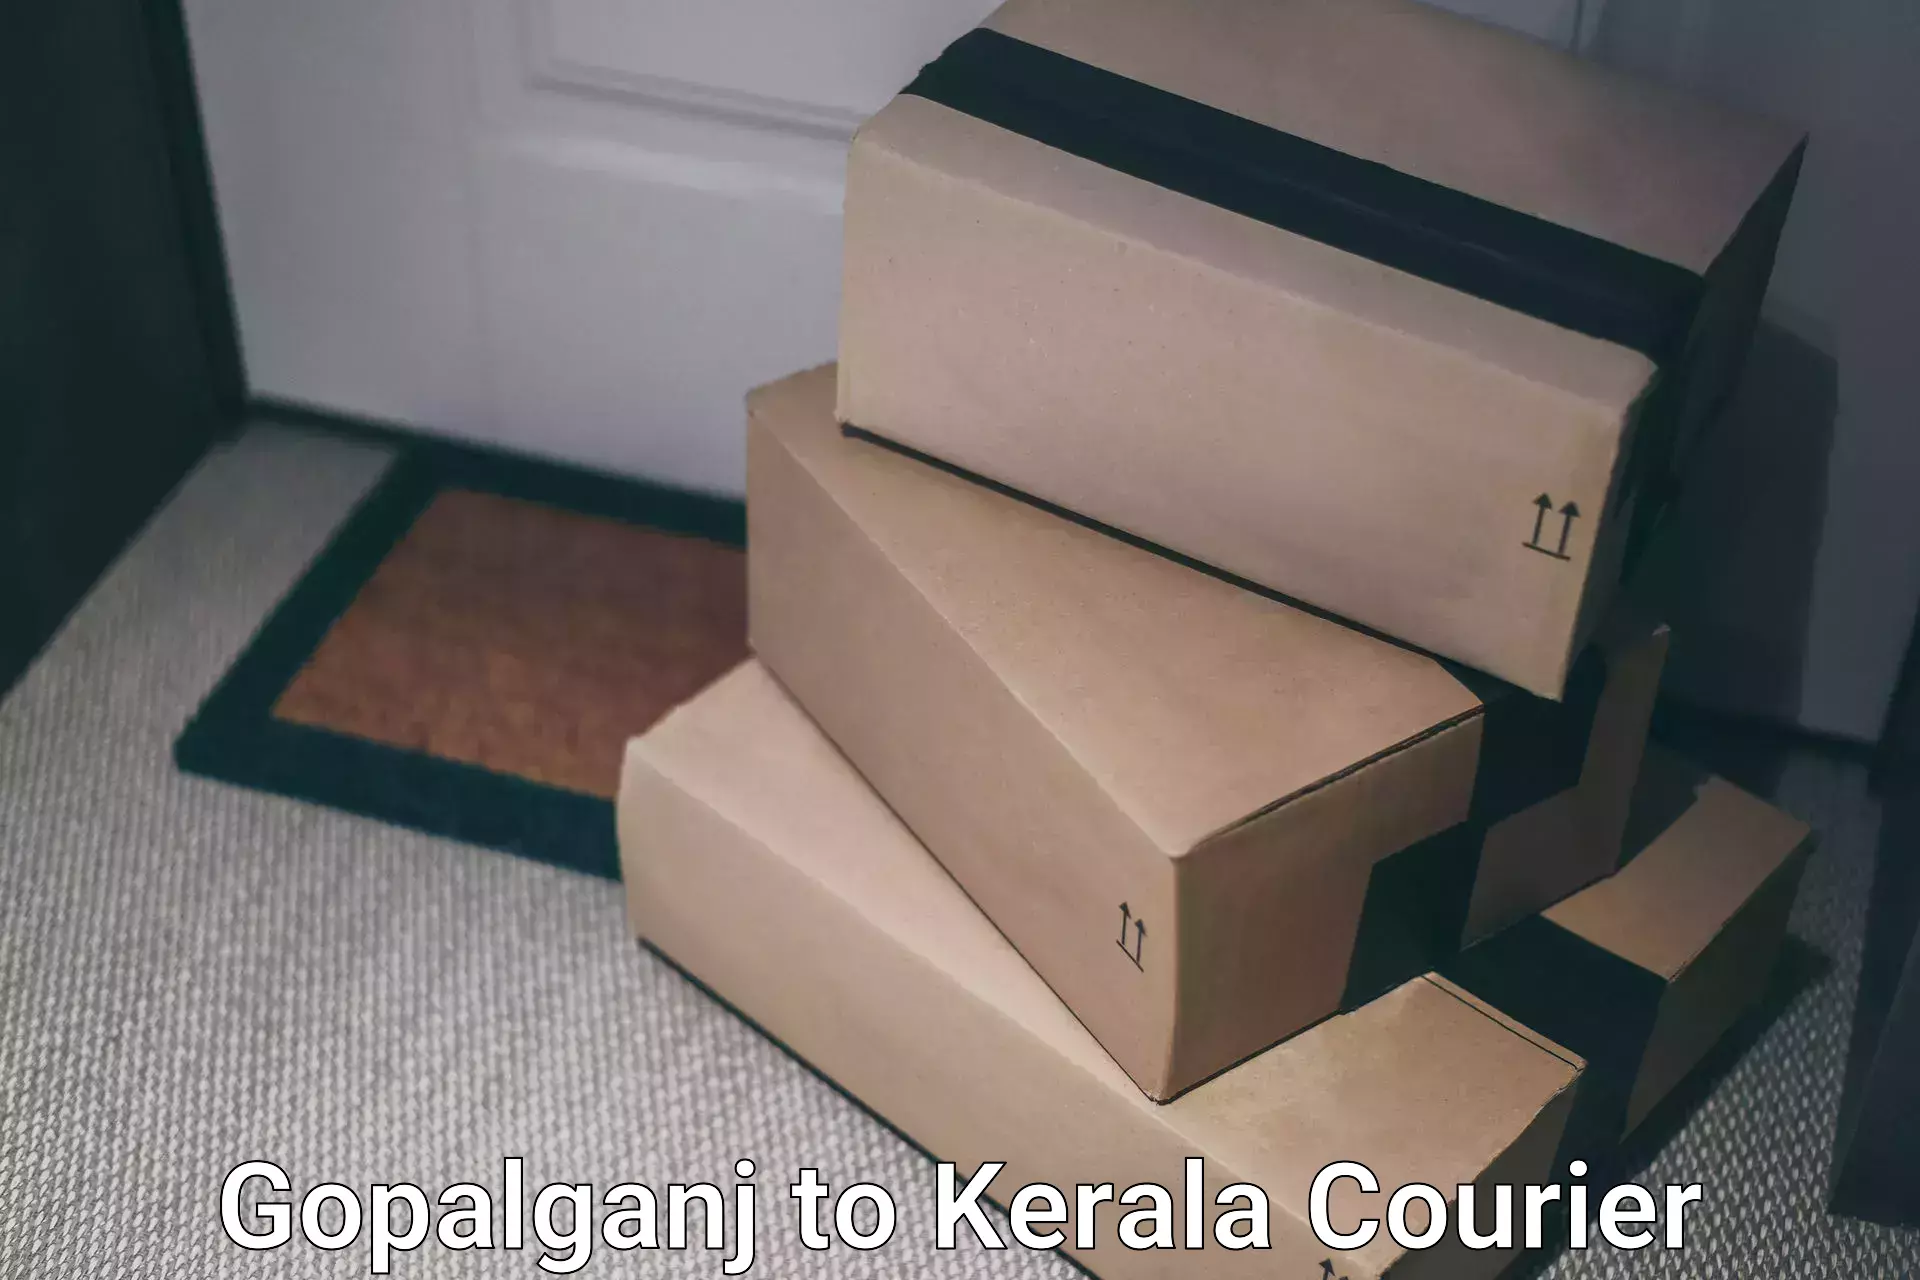 Same-day delivery solutions Gopalganj to Cherthala